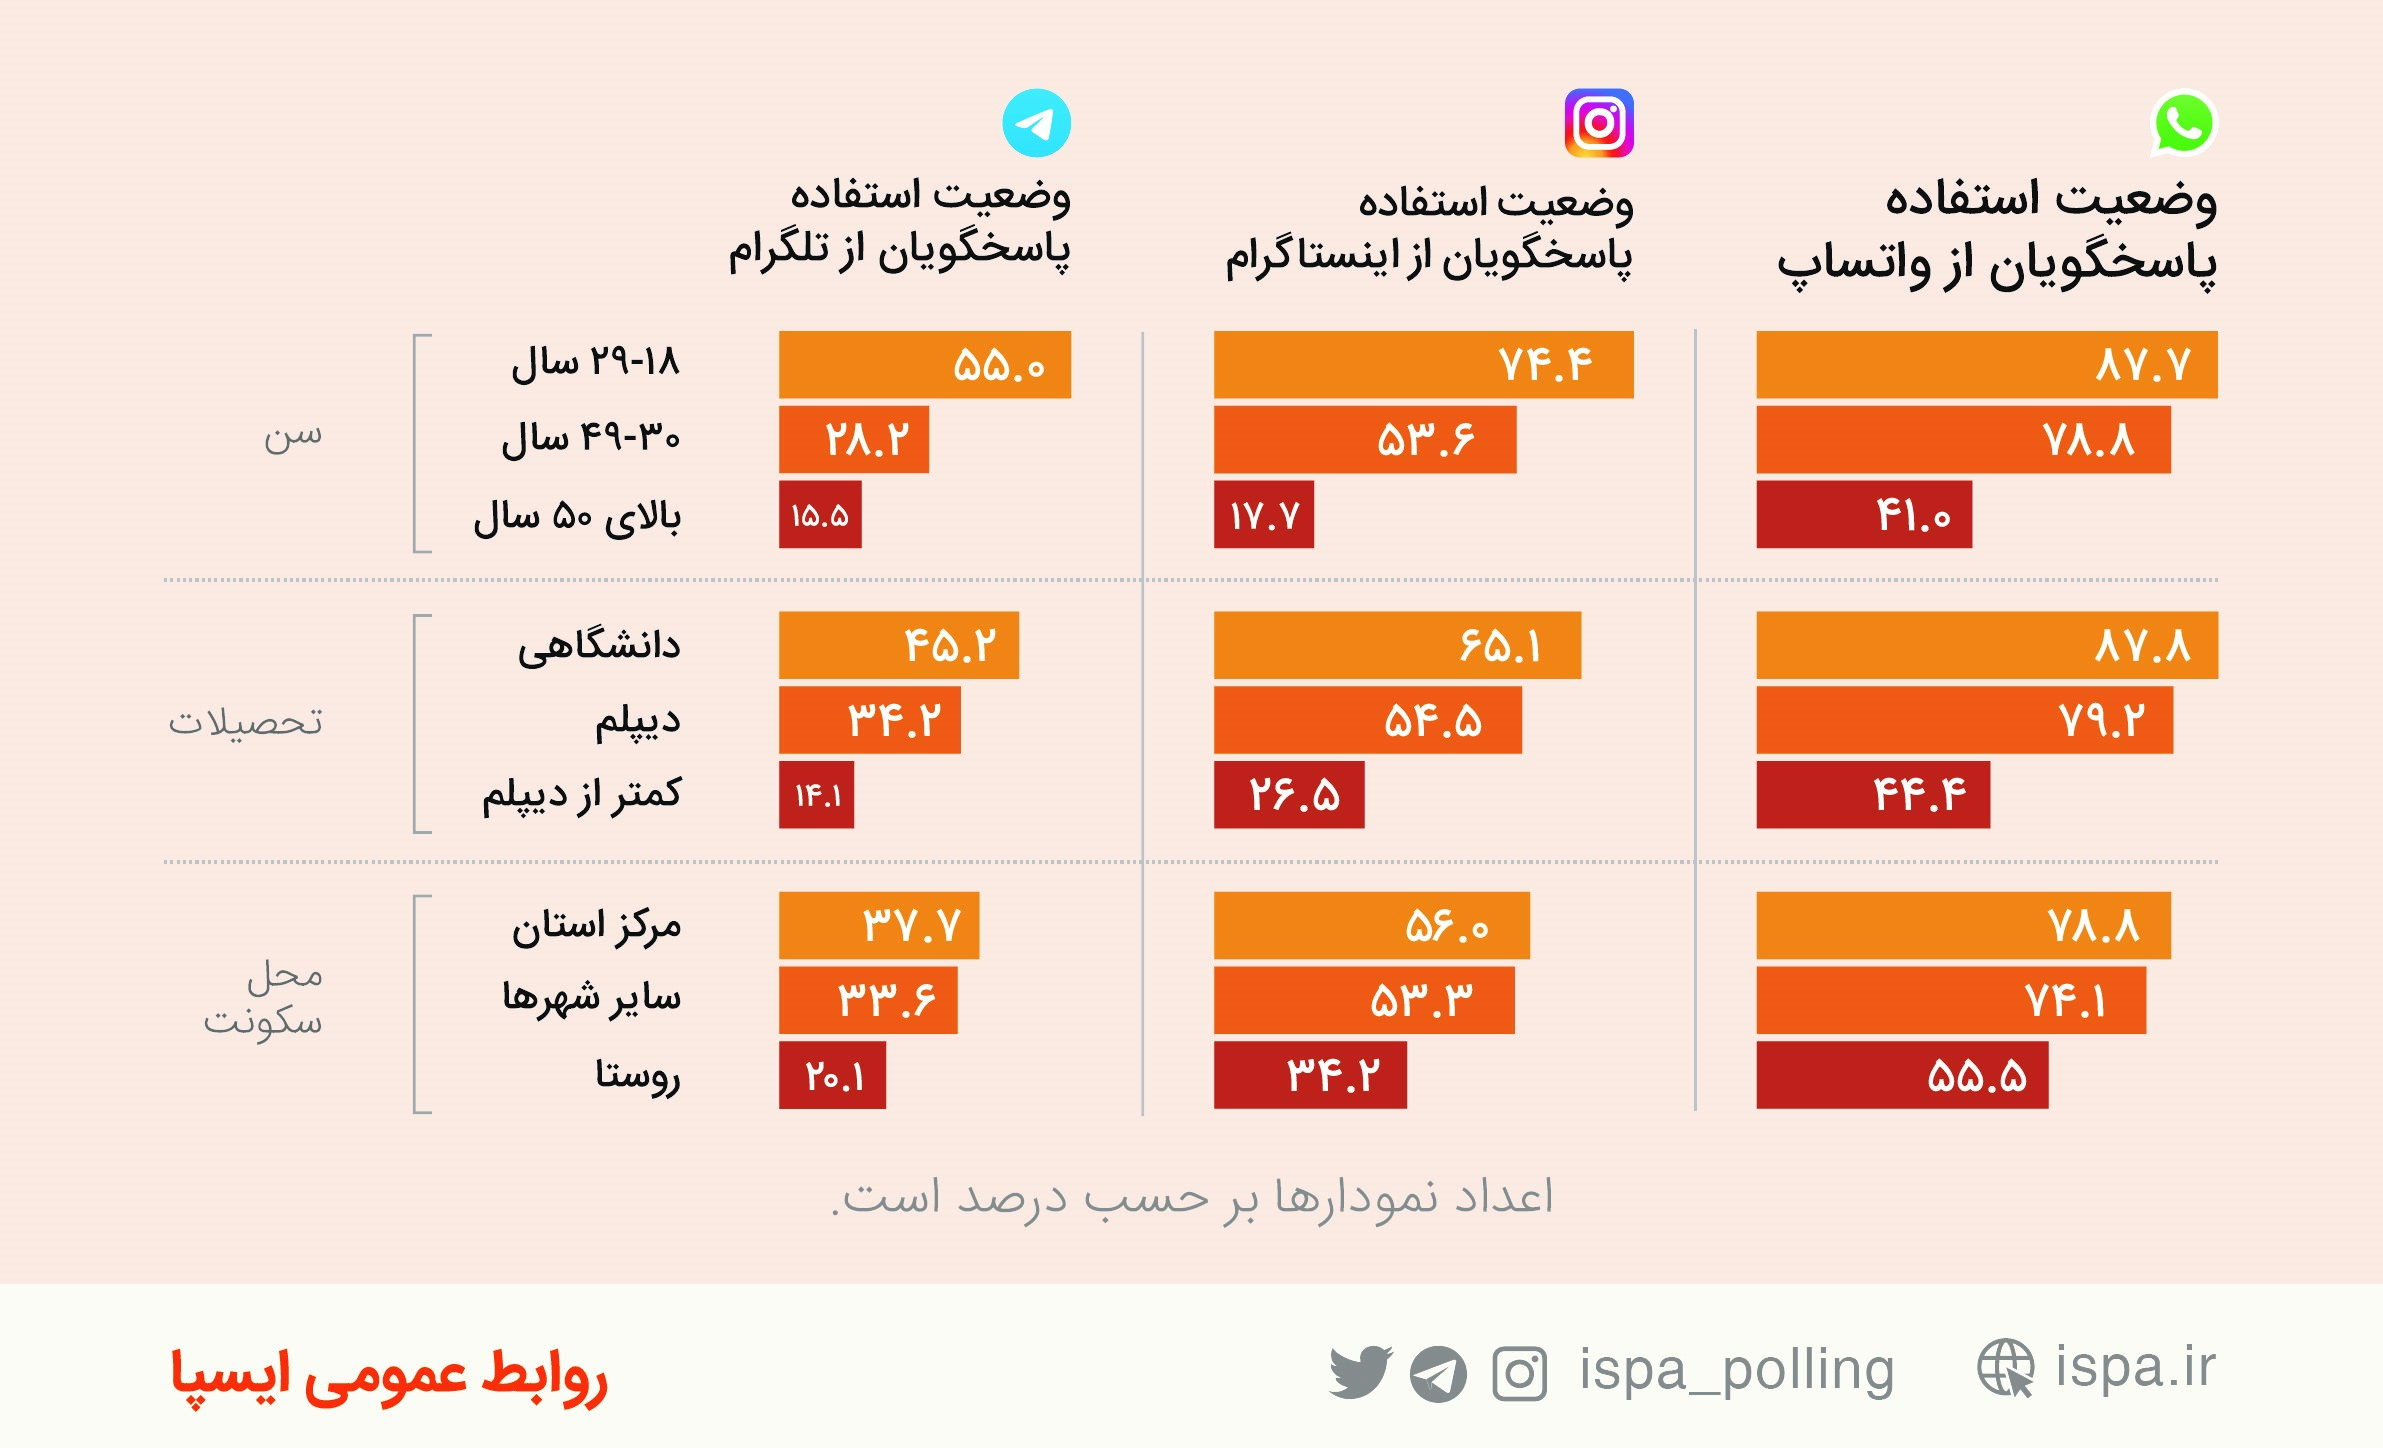 نتایج نظرسنجی ایسپا- واتس اپ- تلگرام- اینستاگرام- مرکز افکارسنجی دانشجویان ایران